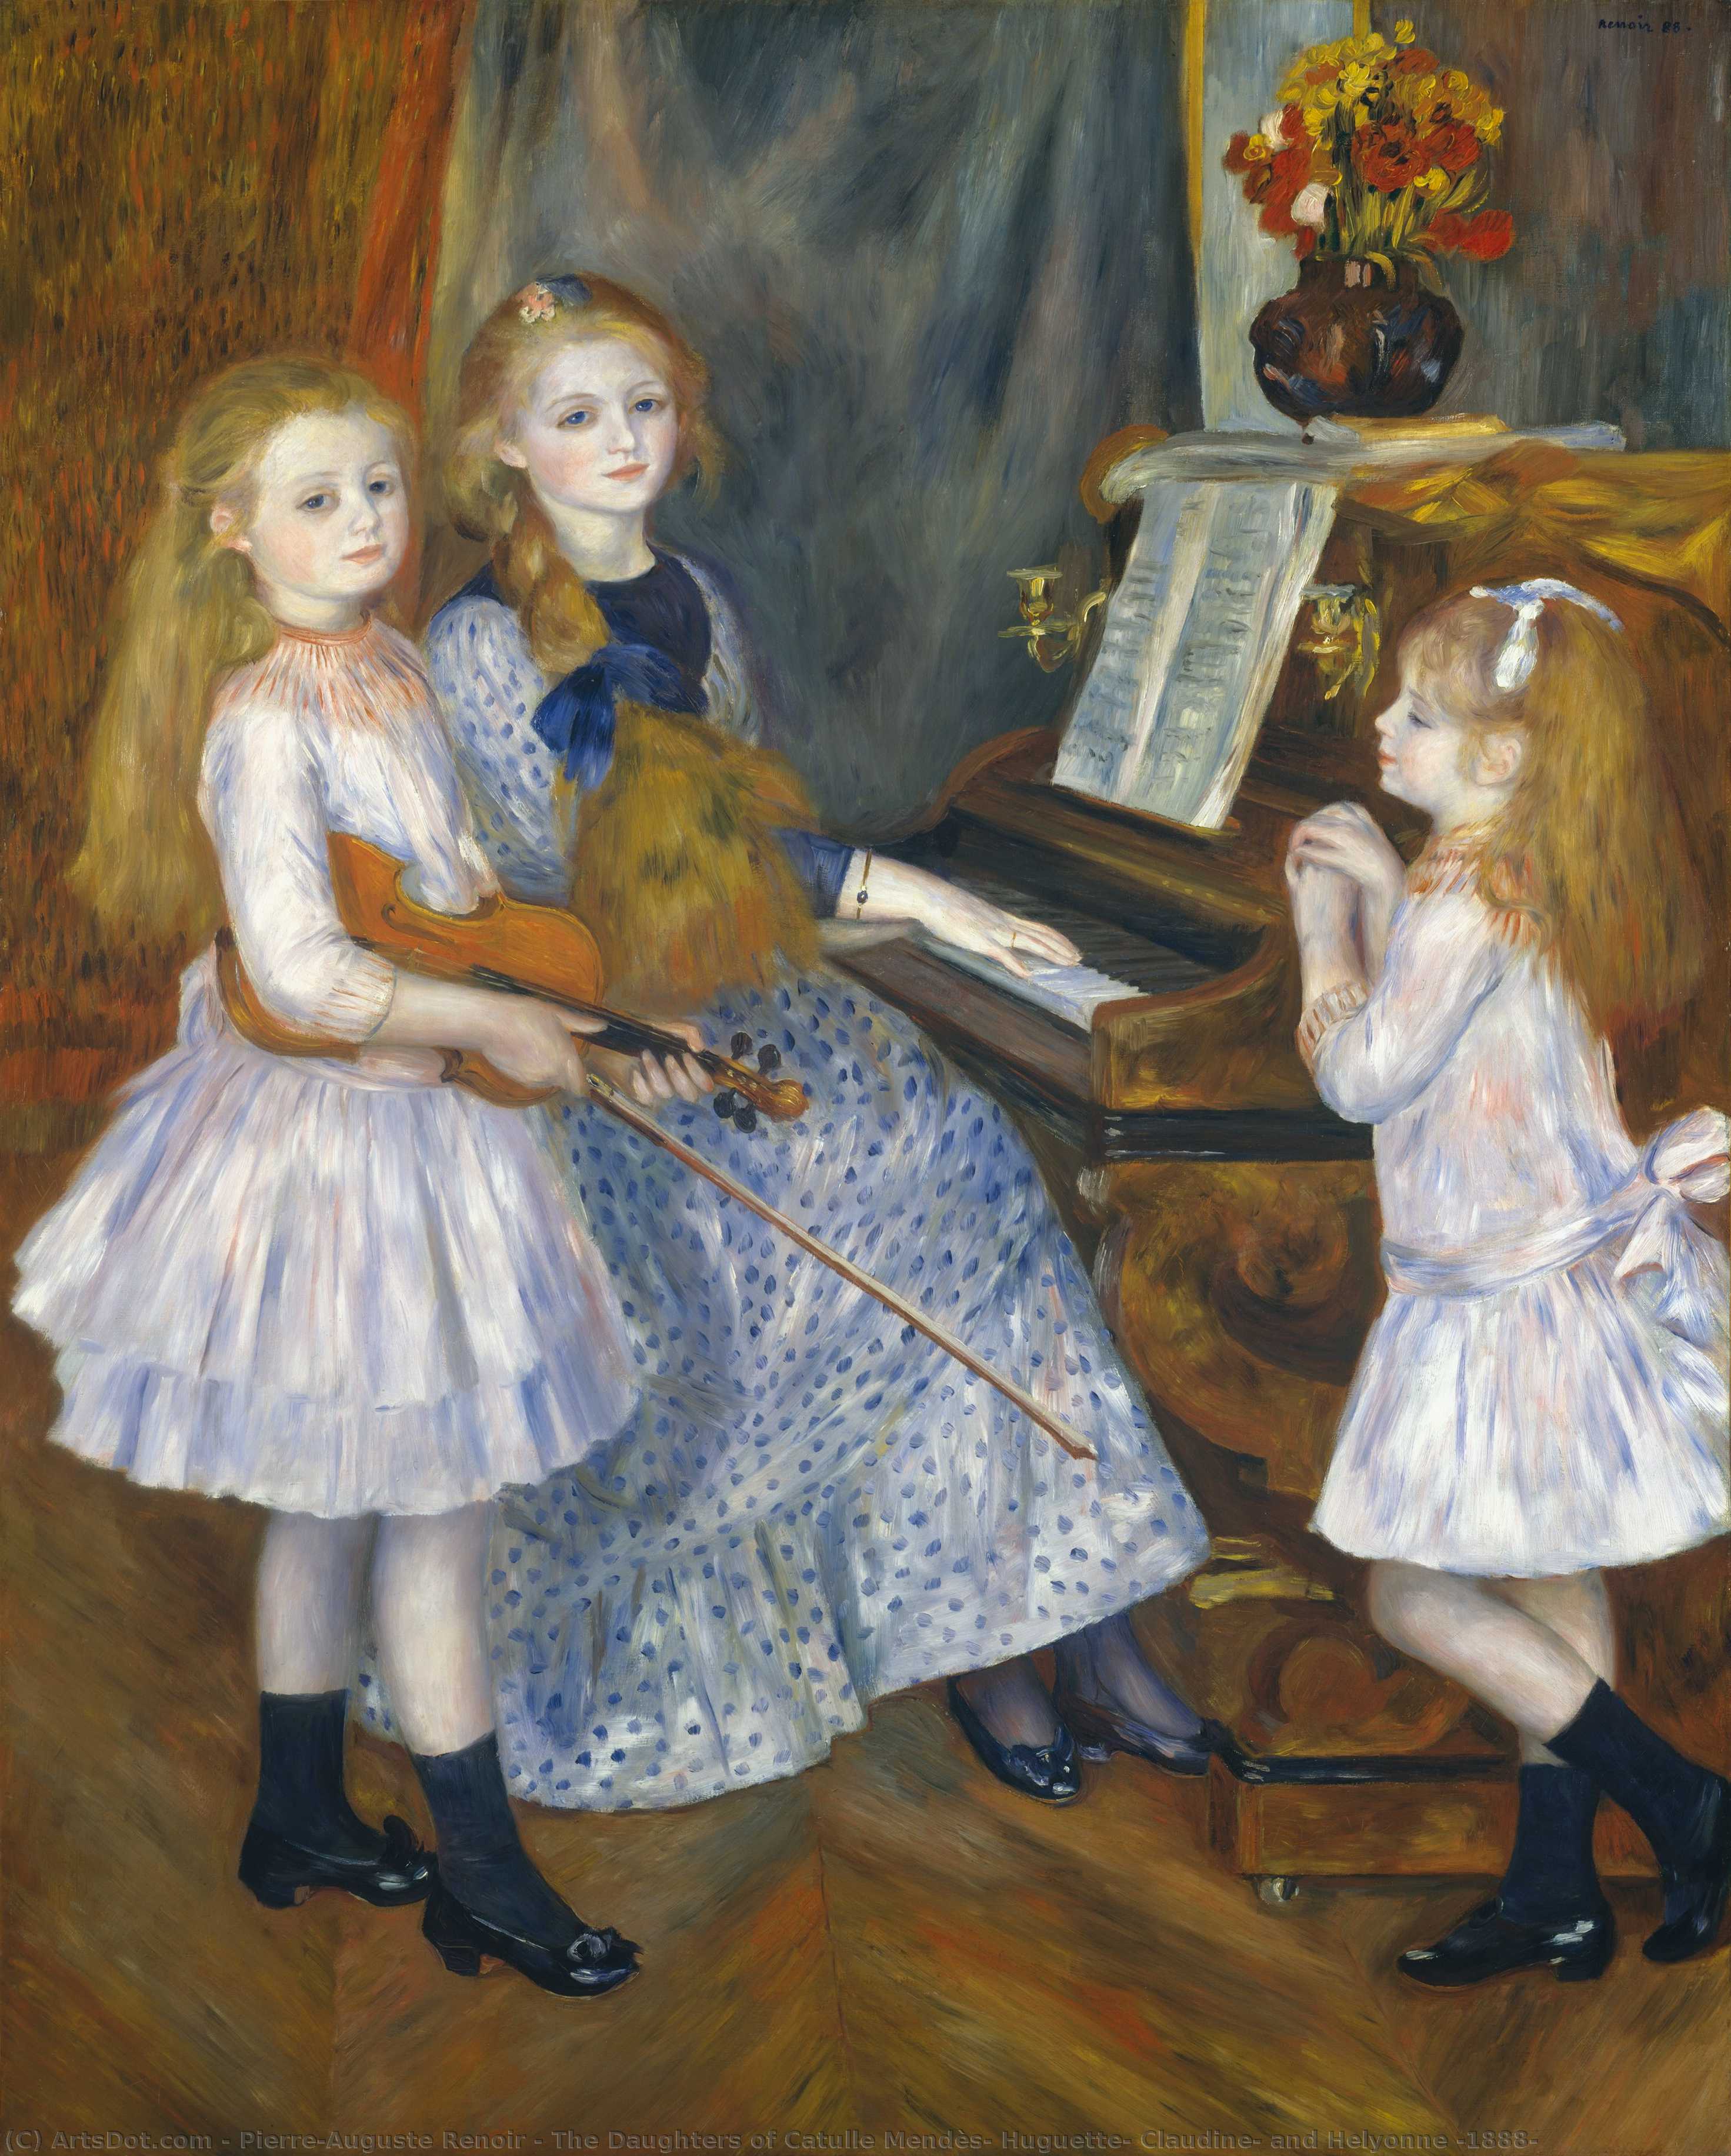 WikiOO.org - Encyclopedia of Fine Arts - Målning, konstverk Pierre-Auguste Renoir - The Daughters of Catulle Mendès, Huguette, Claudine, and Helyonne (1888)